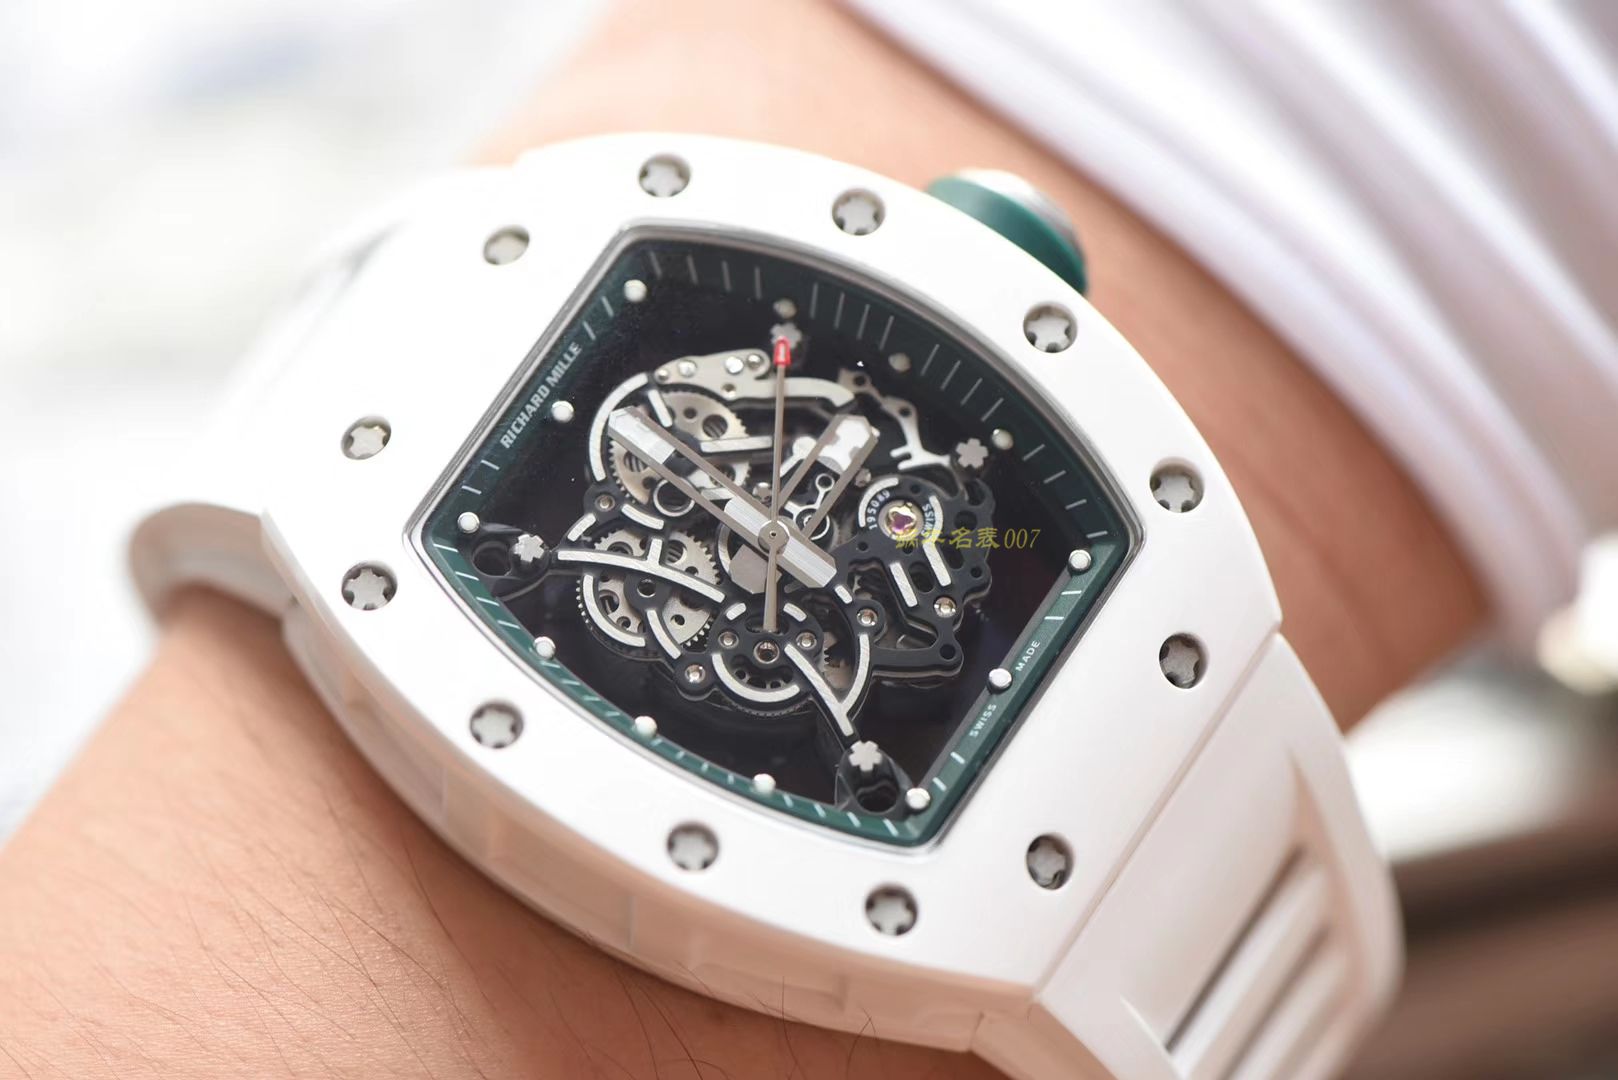 【视频评测】RICHARD MILLE里查德米尔男士系列RM 055腕表【KV一比一超A高仿手表】 